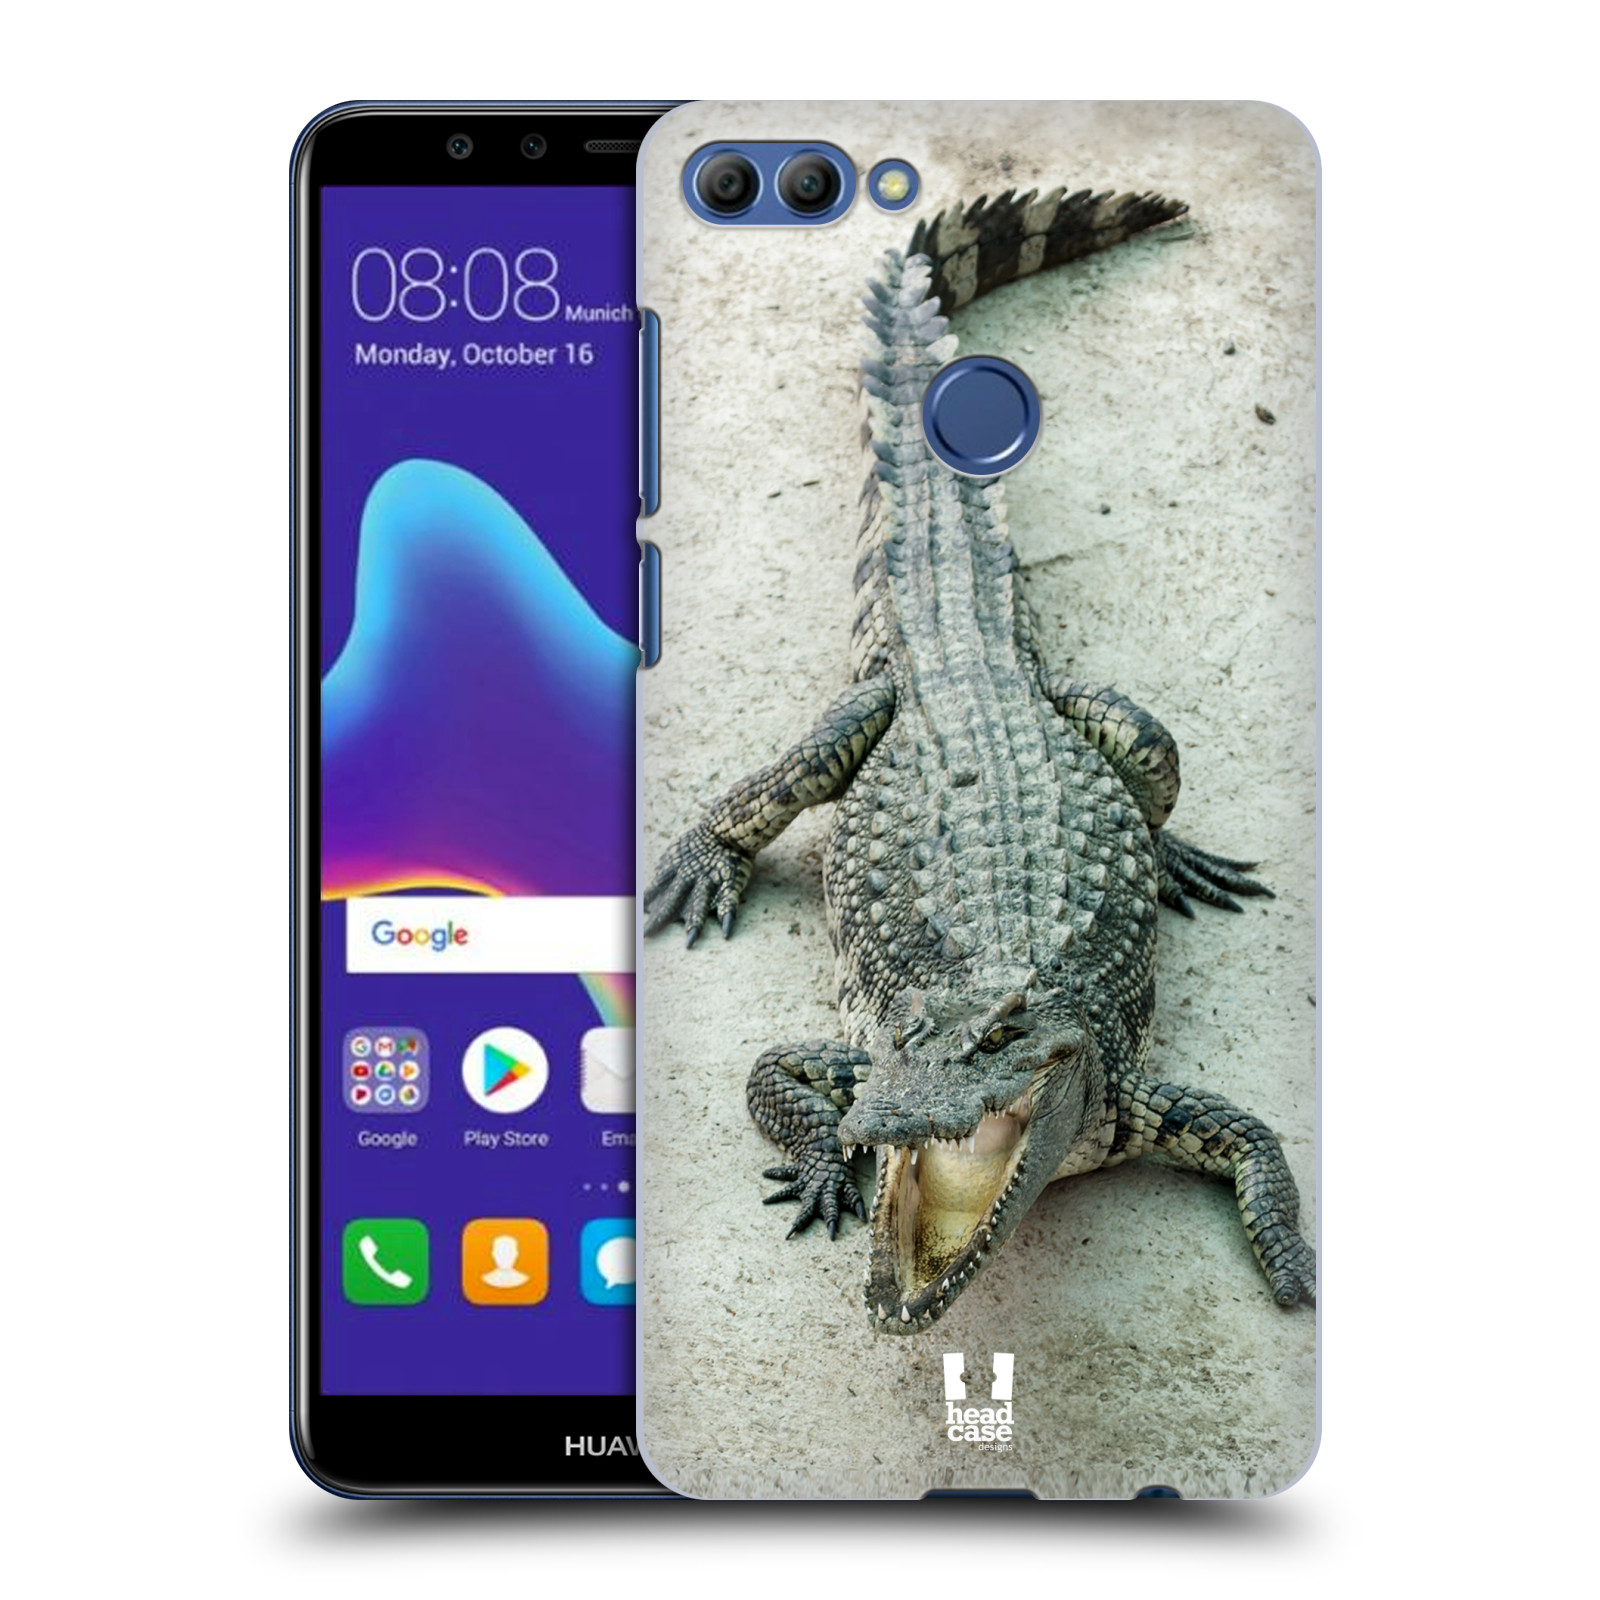 HEAD CASE plastový obal na mobil Huawei Y9 2018 vzor Divočina, Divoký život a zvířata foto KROKODÝL, KAJMAN